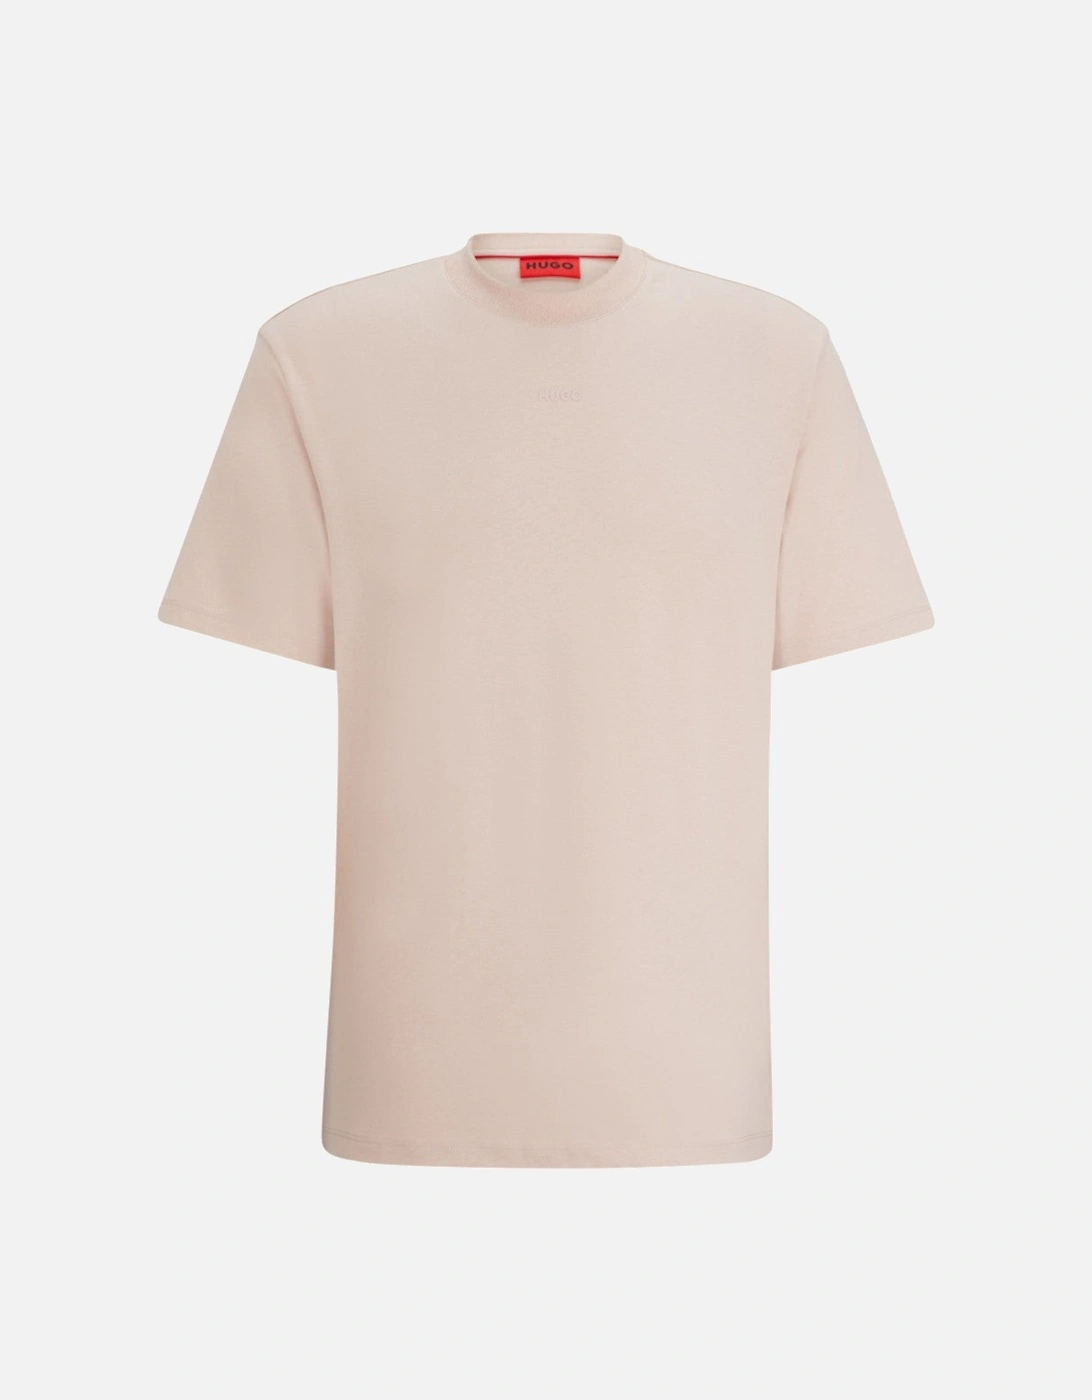 Dapolino T-Shirt 10248326 681 Light Pastel Pink, 5 of 4